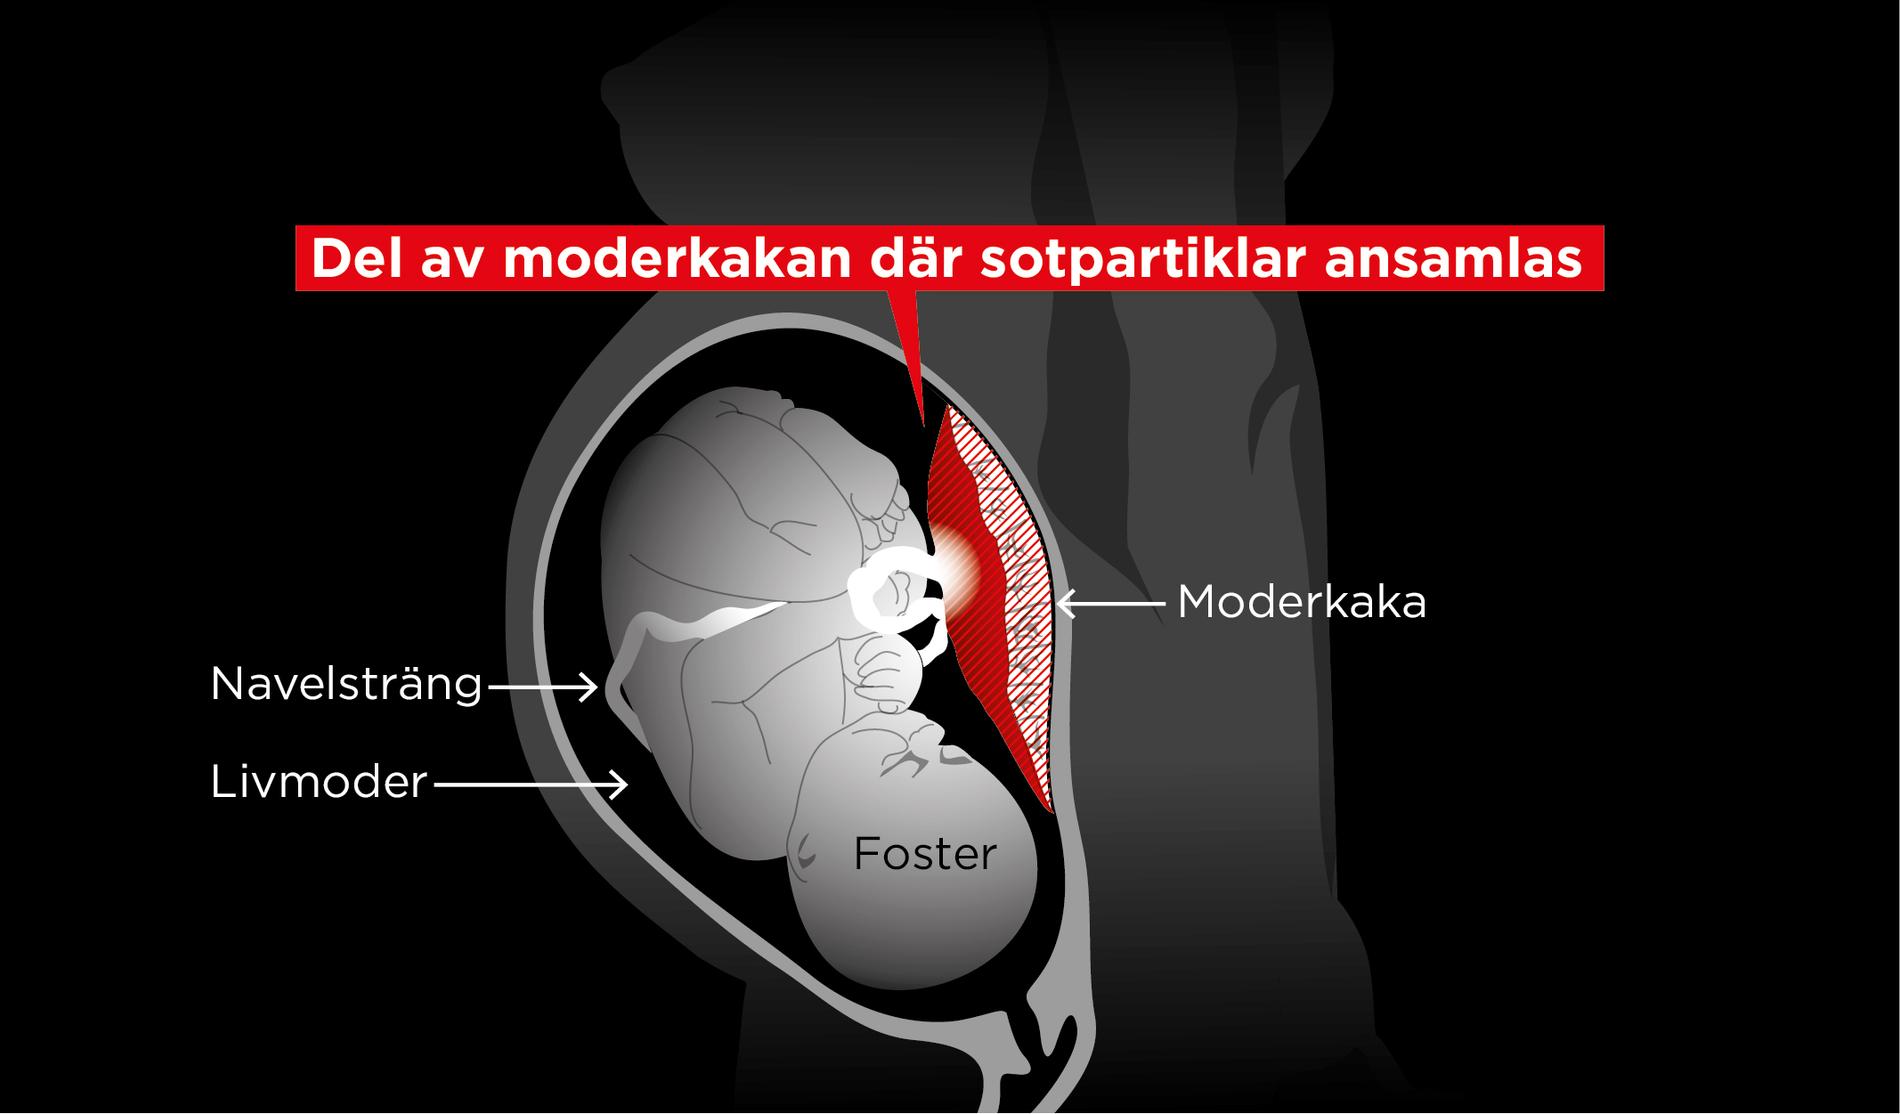 Moderkakan (placentan) delas mellan mamman och barnet. Den så kallade placentabarriären fungerar som ett membran där utbytet av näringsämnen, syre, koldioxid och salter mellan mamman och fostret sker. Partiklarna hittades i vävnadsprover i den del som "tillhör" fostret.